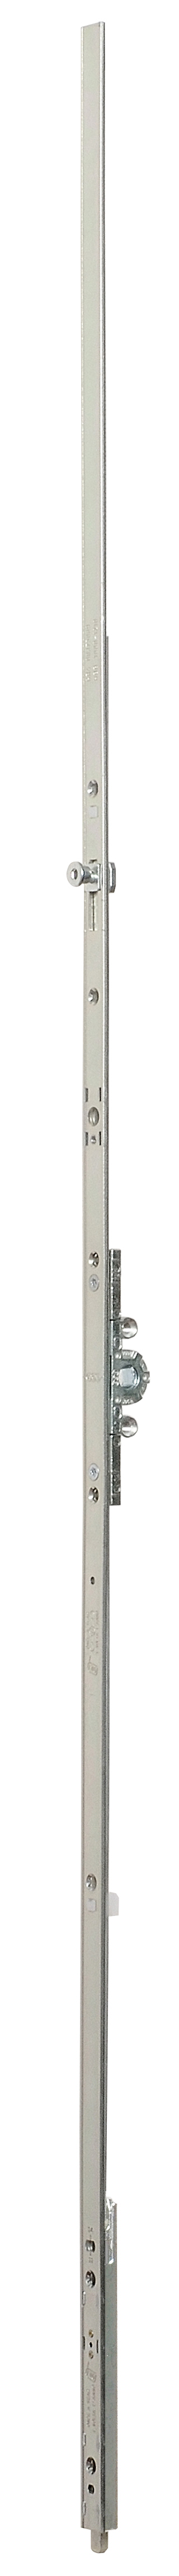 AGB -  Cremonese ARTECH anta a bandiera altezza maniglia fissa con puntale chiusura ad espansione per seconda anta - gr / dim. 04 - entrata 15 - alt. man. 280 - lbb/hbb 600 - 801